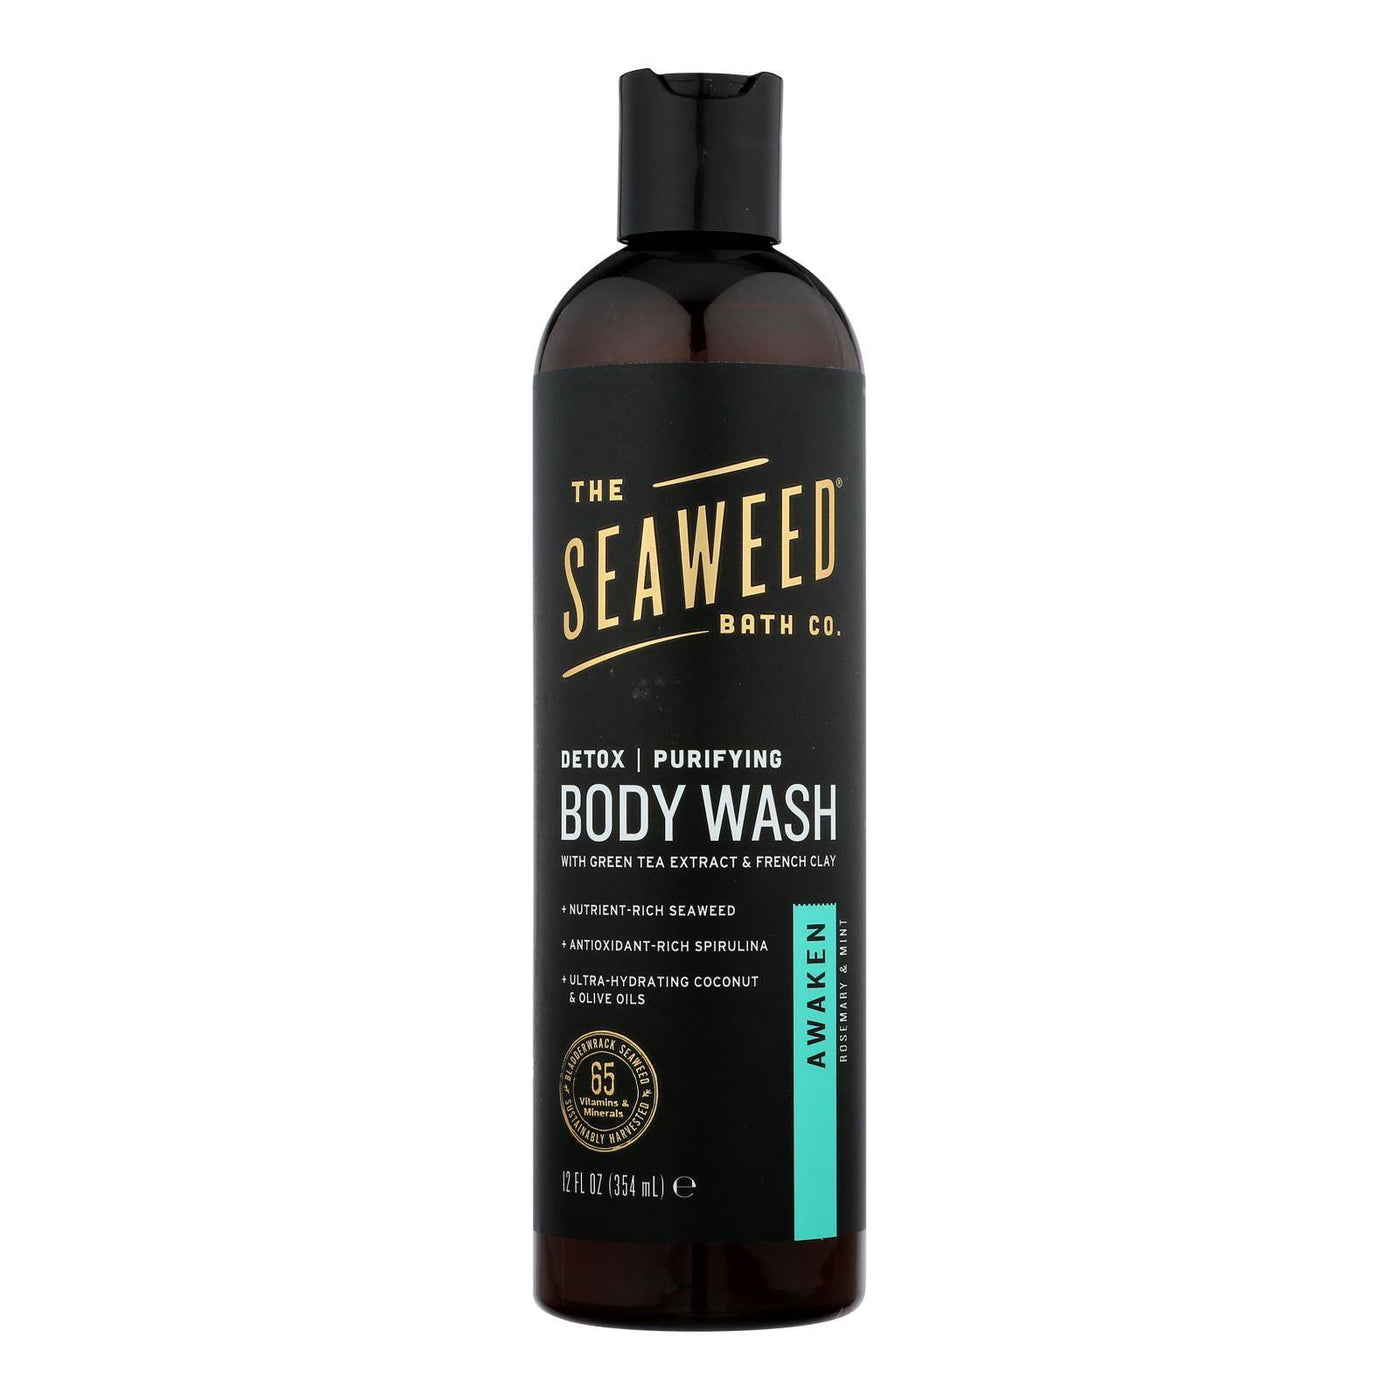 Buy The Seaweed Bath Co Bodywash - Detox - Purify - Awake - 12 Fl Oz  at OnlyNaturals.us